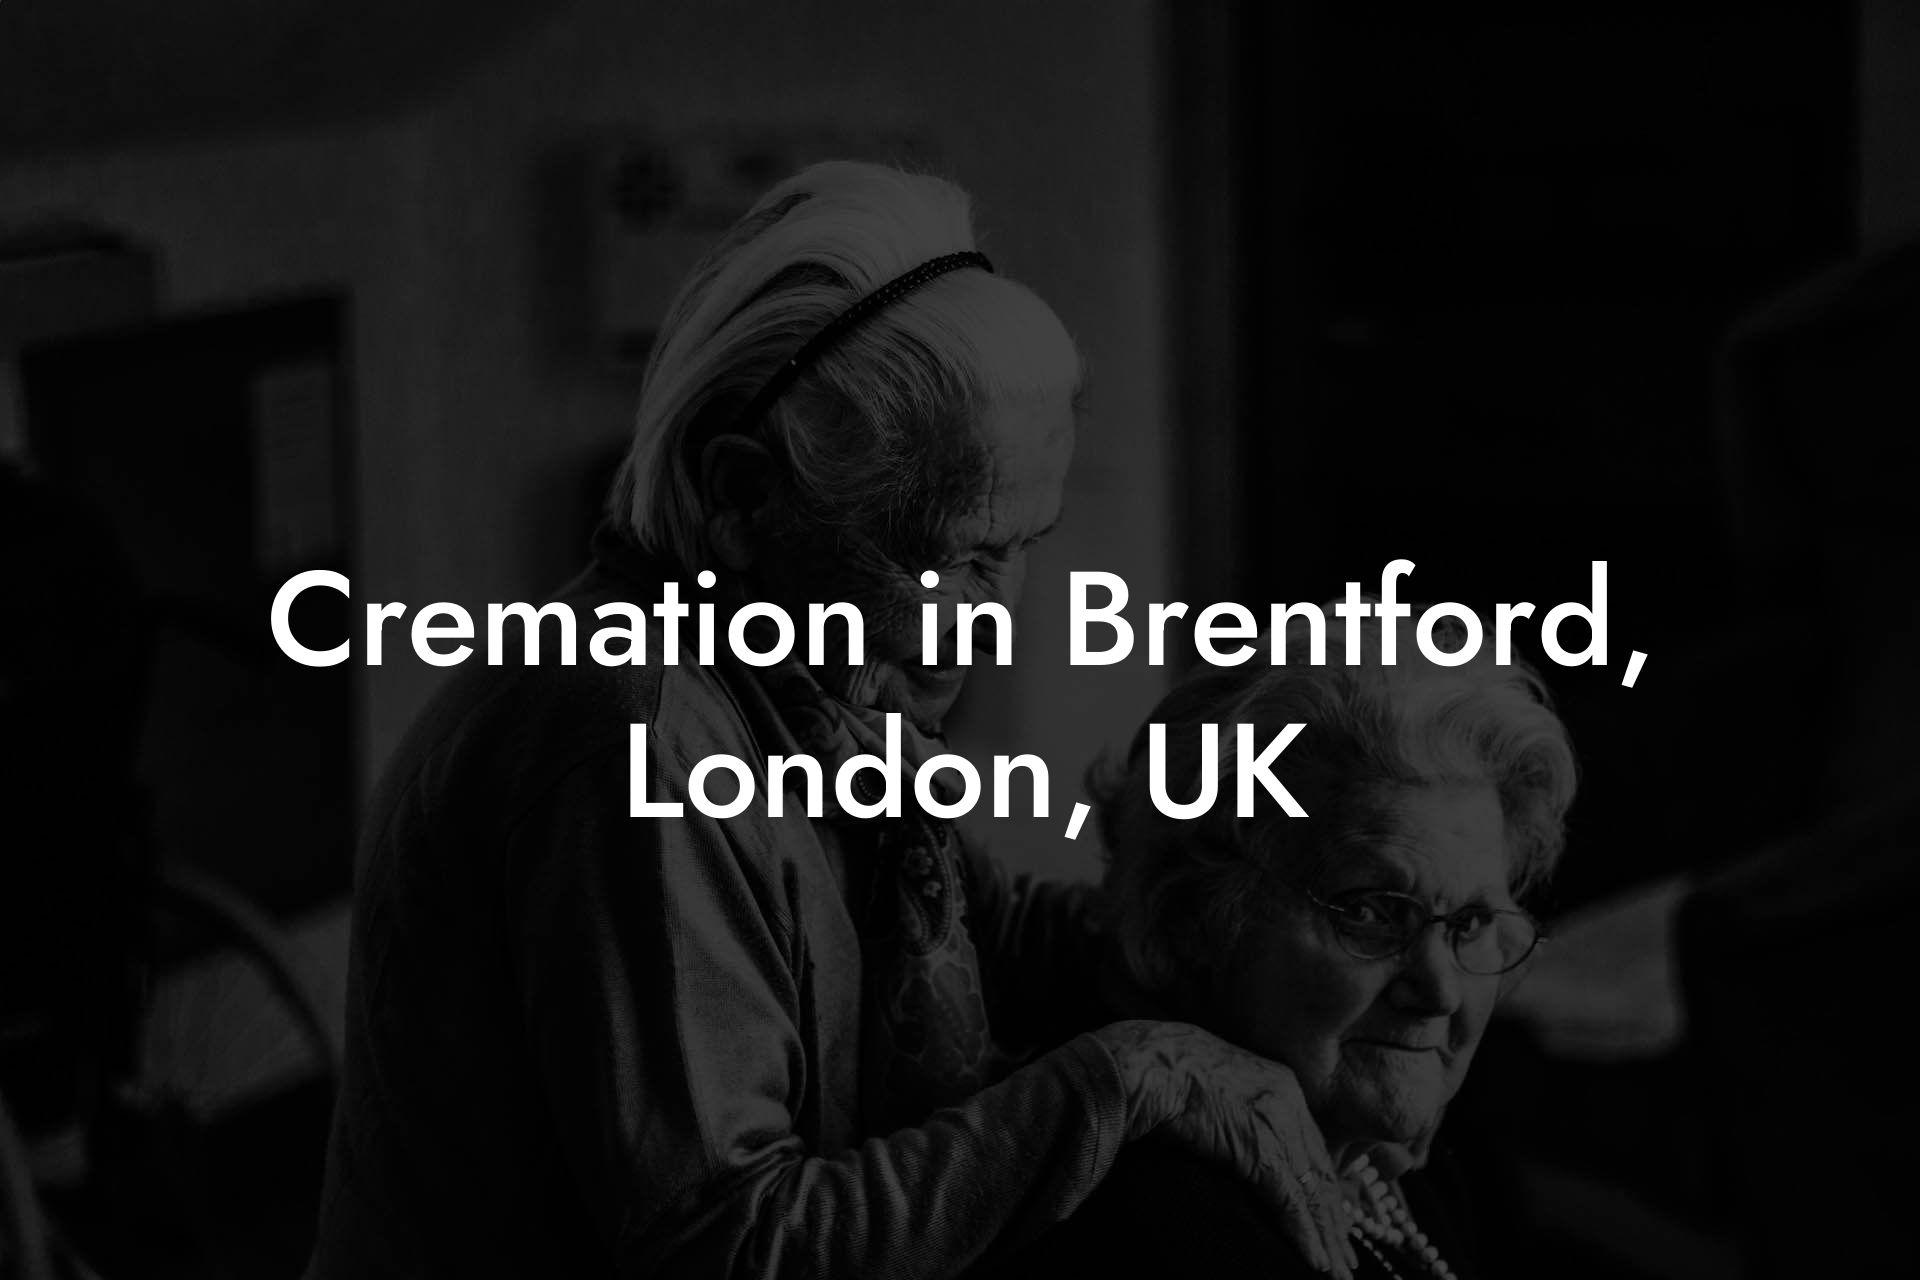 Cremation in Brentford, London, UK